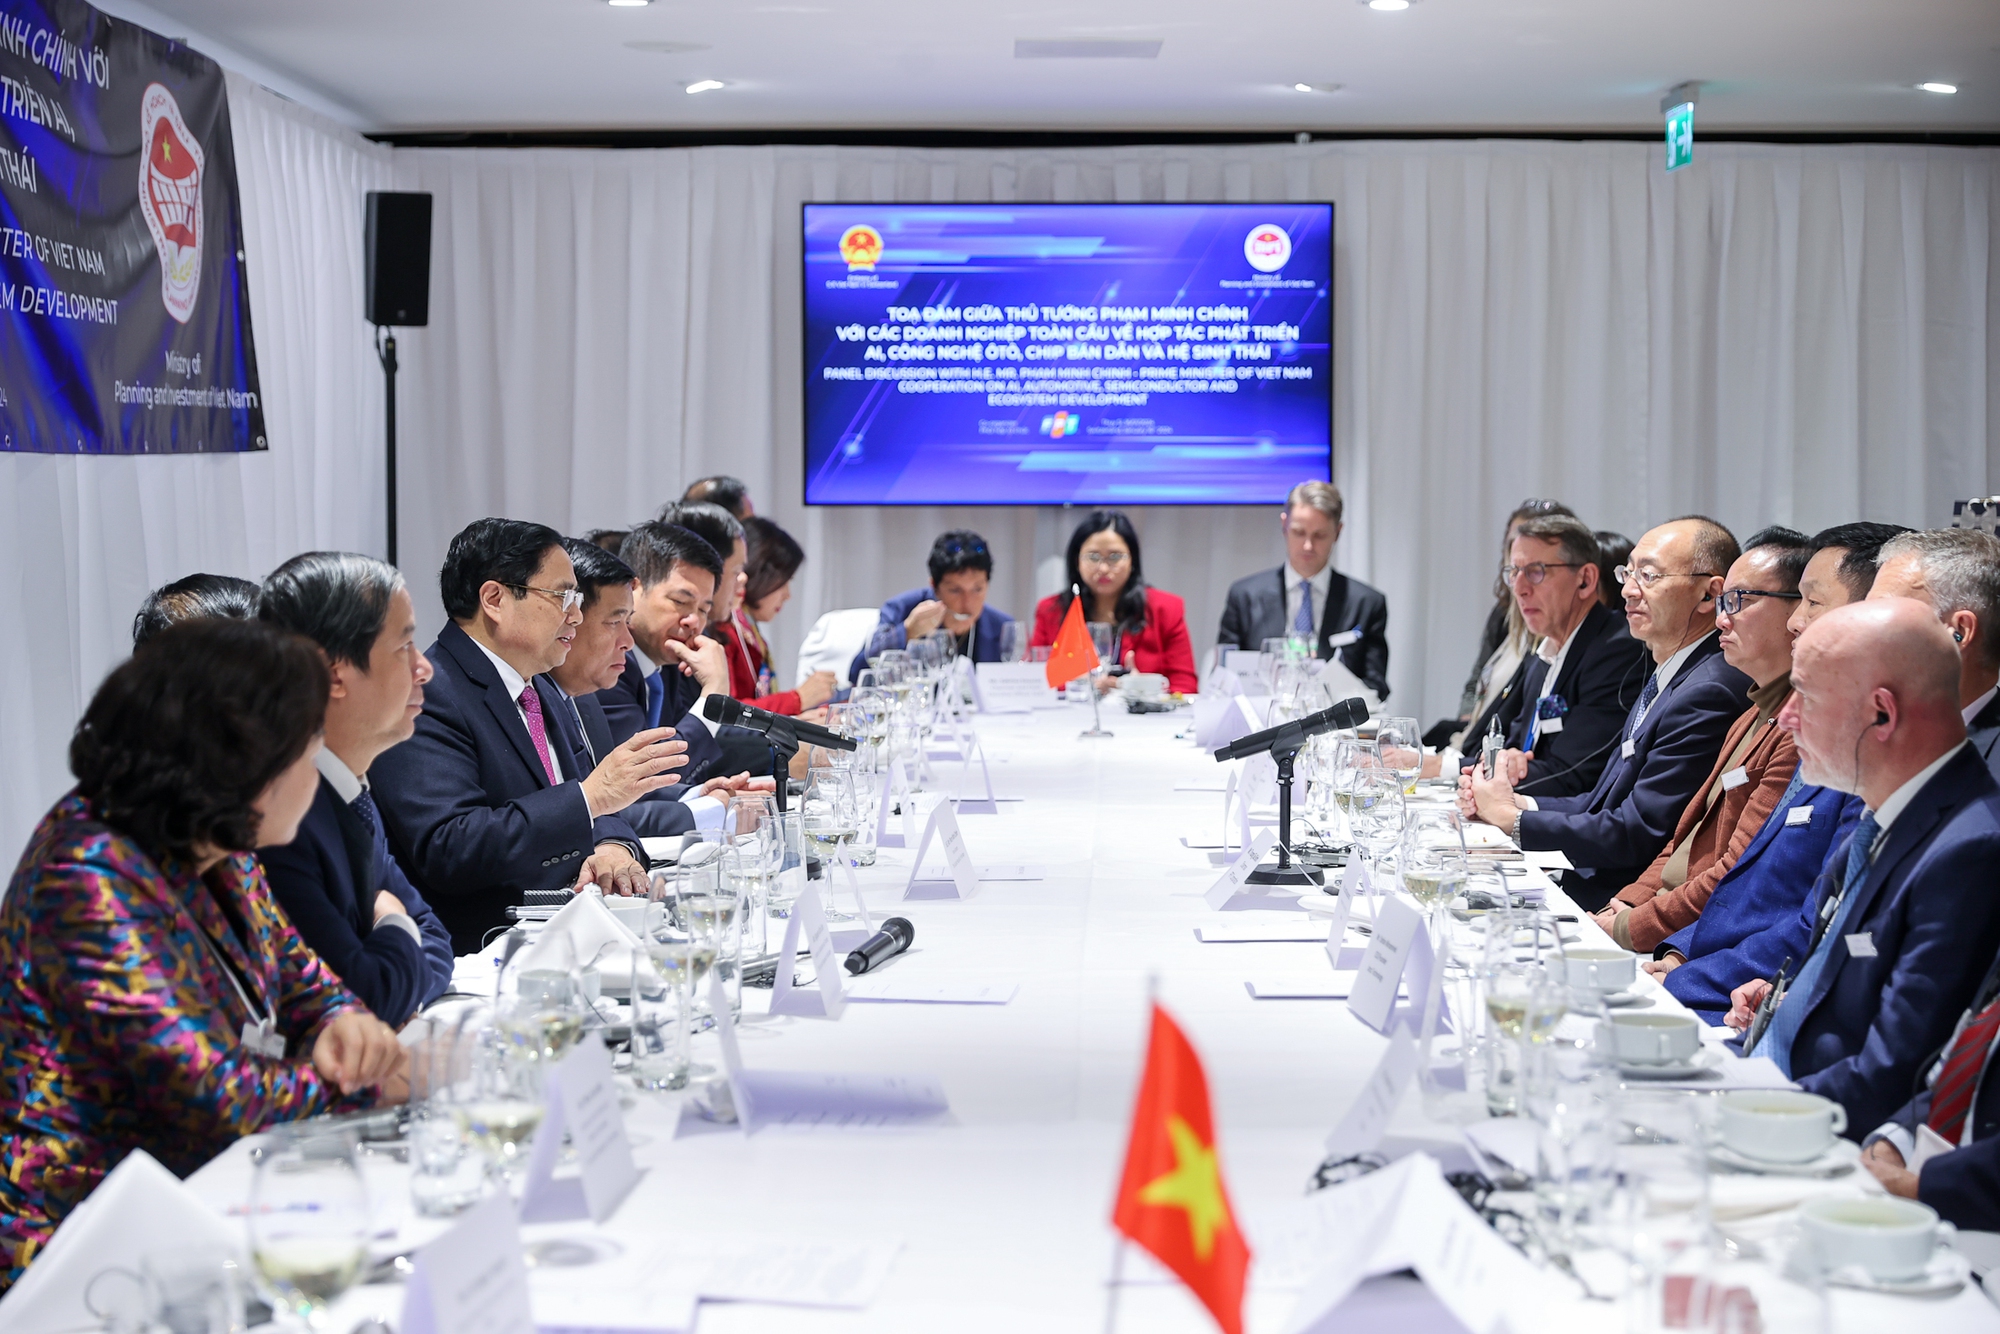 Thủ tướng mong các doanh nghiệp tiếp tục hợp tác, đầu tư hiệu quả, bền vững tại Việt Nam - Ảnh: VGP/Nhật Bắc